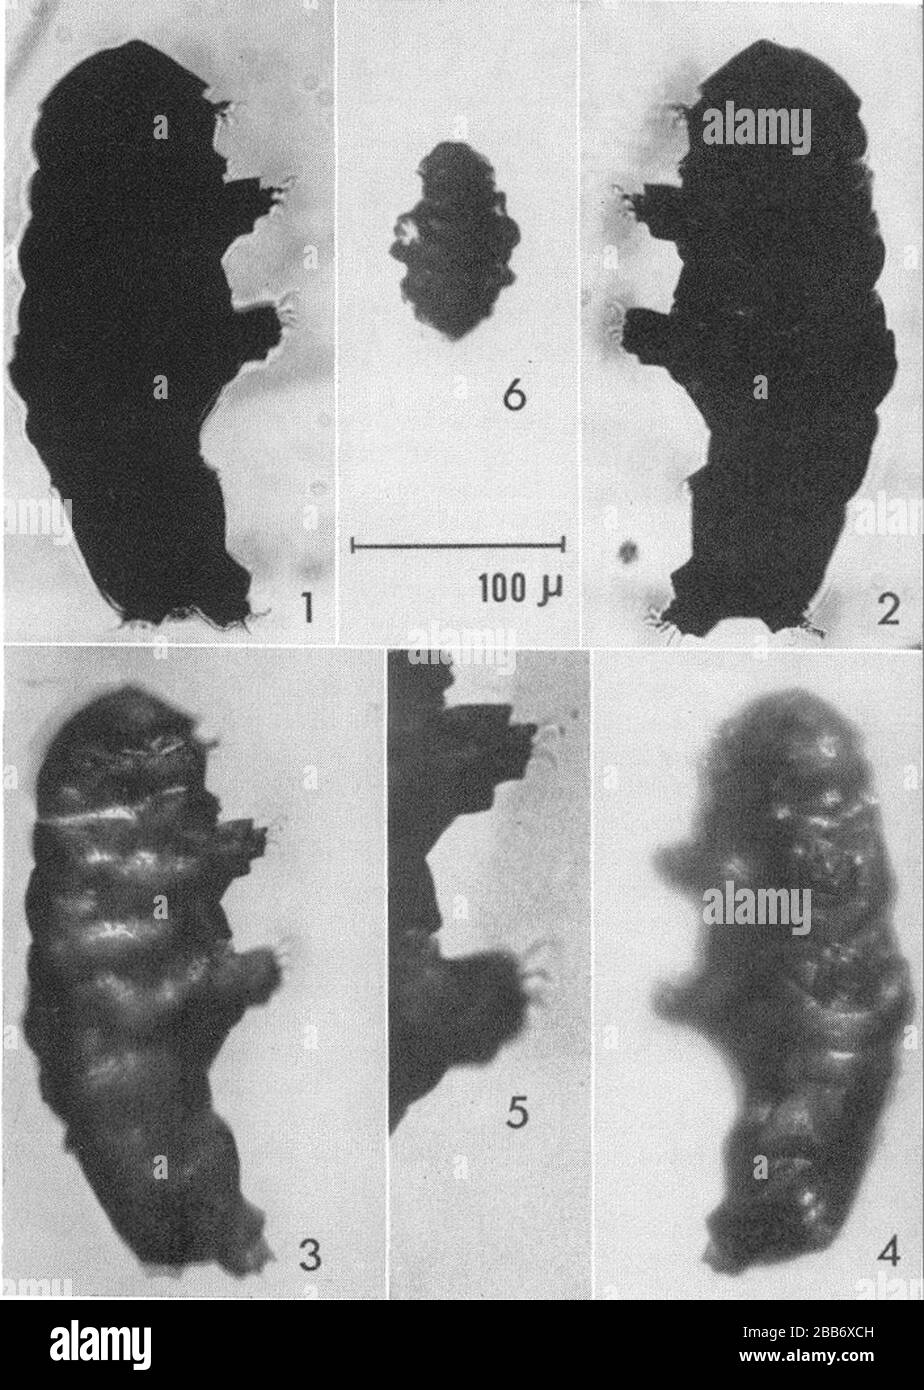 "Englisch: Beorn leggi Cooper, Feigen. 1-5; Abb. 6 m juvenil (? Hetero)tardigrade. Abb. 1, 3- rechte Seite der Probe; Abb. 2, 4-links; Abb. Beine II und III der Abb. 3, vergrößert. 100 Mikrometer skalieren. Silhouetten 1 und 2 wurden von William Legg fotografiert und sind aus seiner These reproduziert. Abb. 3. Und 4 wurden mit dem in Kronenöl eingetauchten Exemplar fotografiert, das mit einer Kombination aus reflektiertem und durchstrahltem Licht beleuchtet wurde und an ähnlichen, aber nicht identischen Positionen wie die von 1, 2 und o.f Textfiguren positioniert war. Keines der Fotos wurde retuschiert, sondern die Krallen in Abb. hav Stockfoto